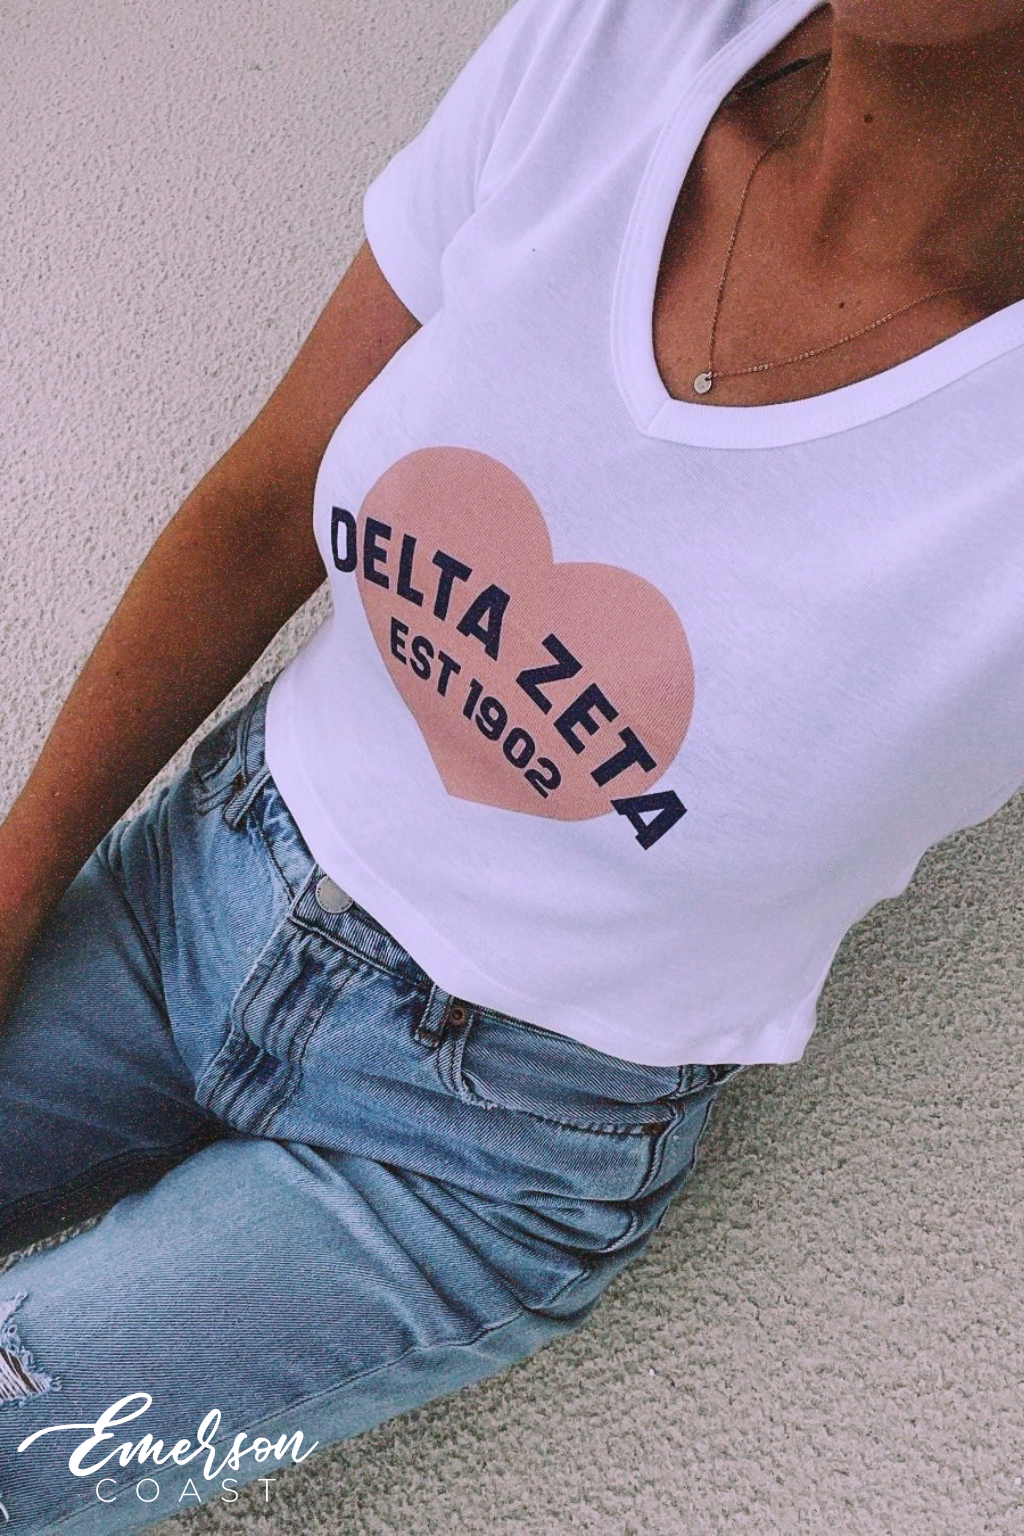 Delta Zeta Heart V-neck Baby Tee